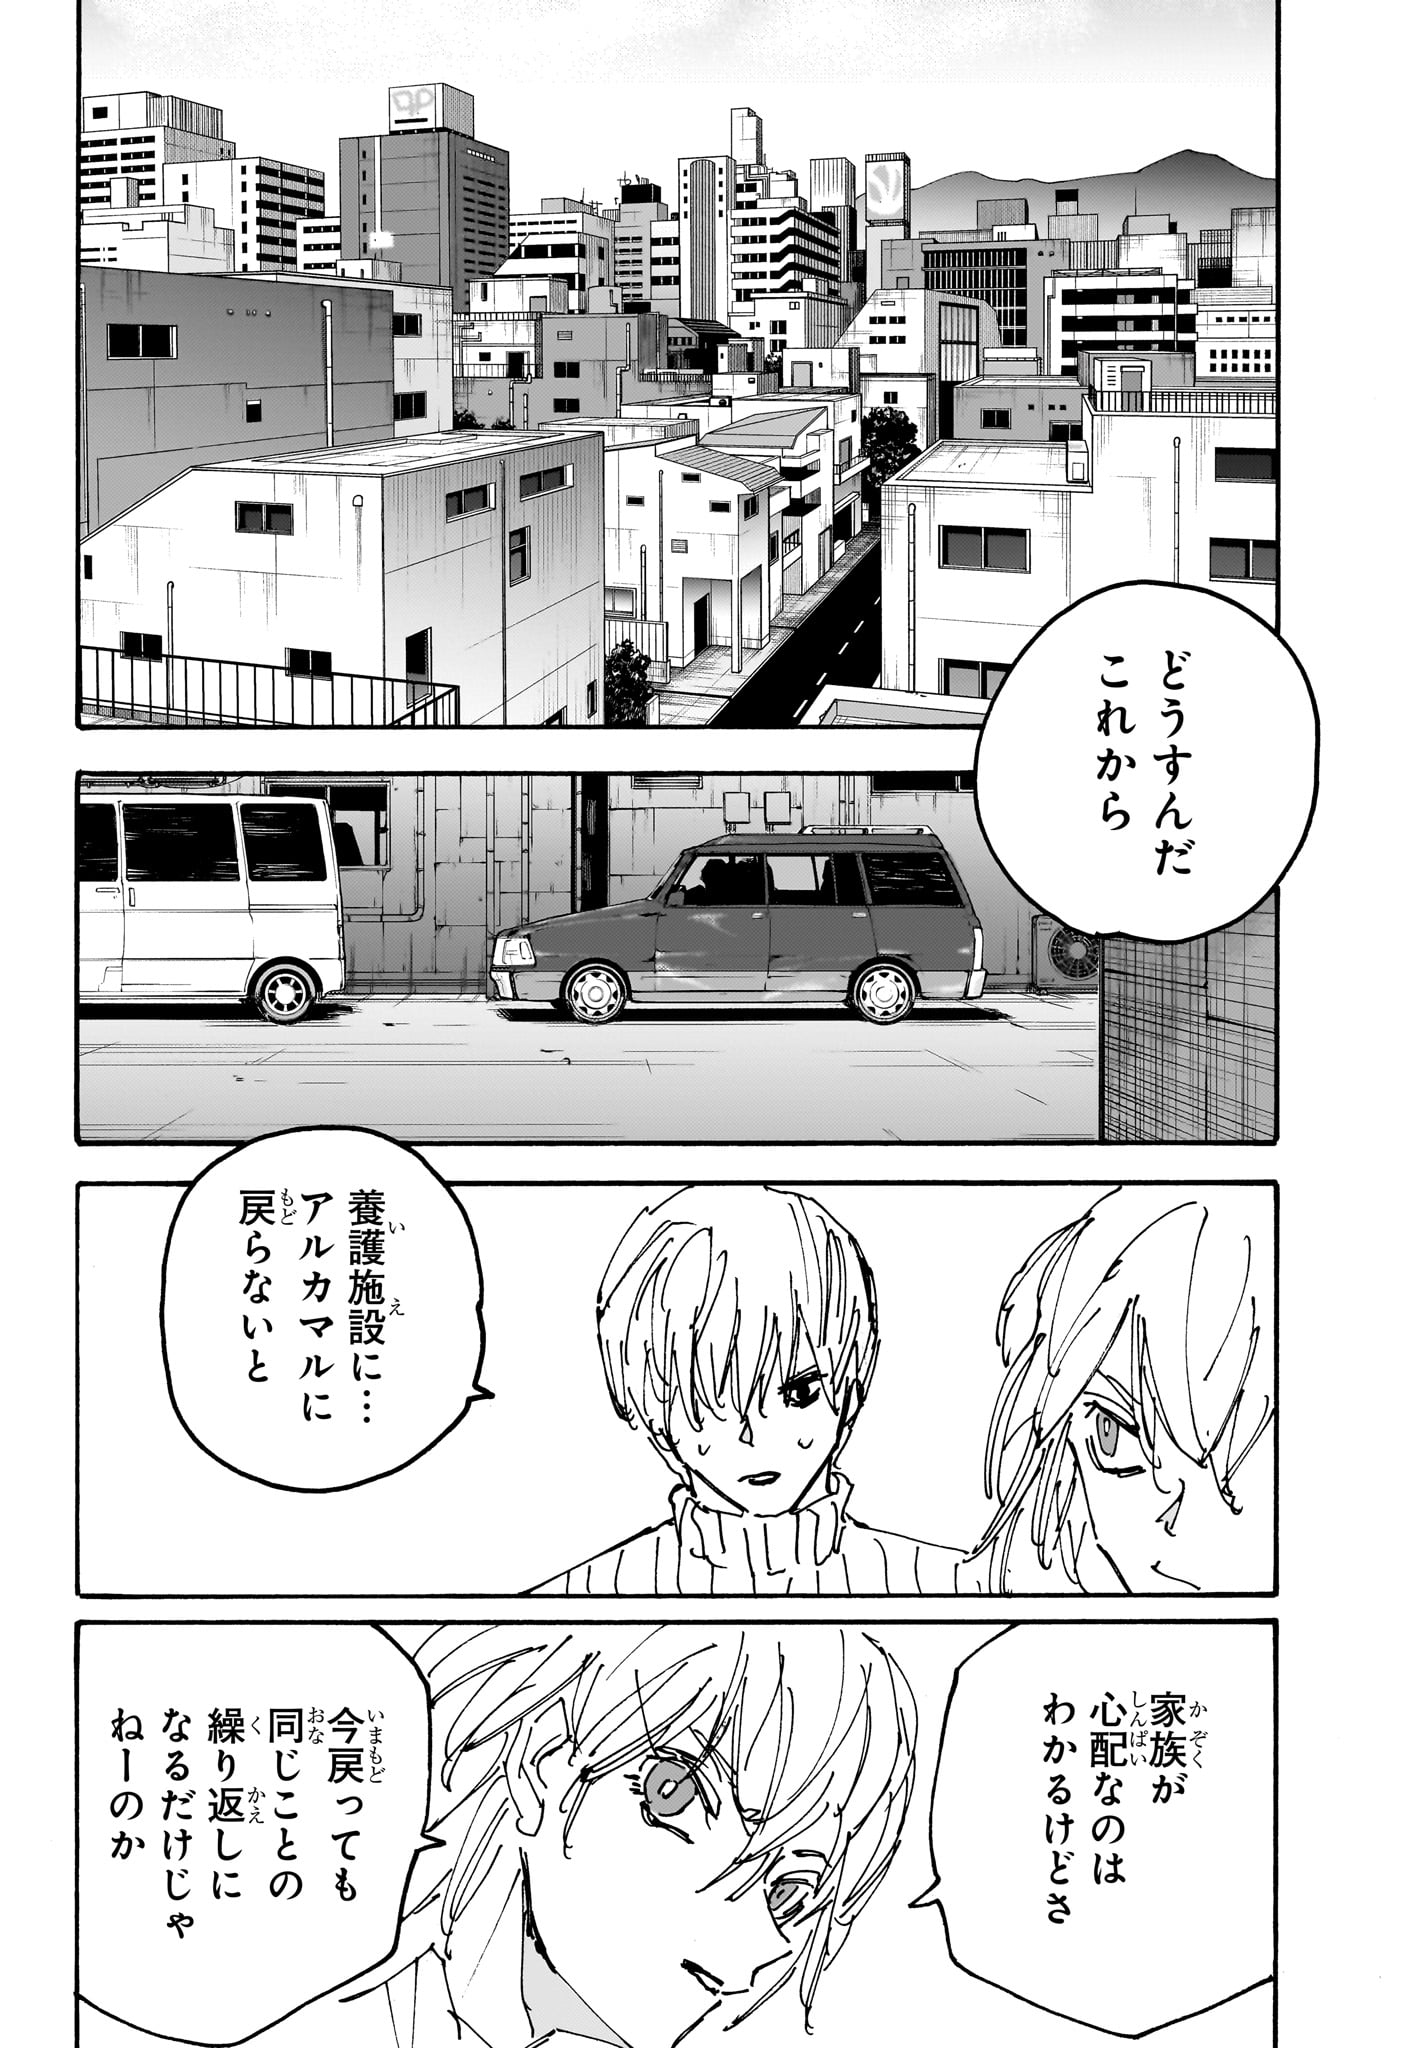 Sakamoto Days - Chapter 173 - Page 14